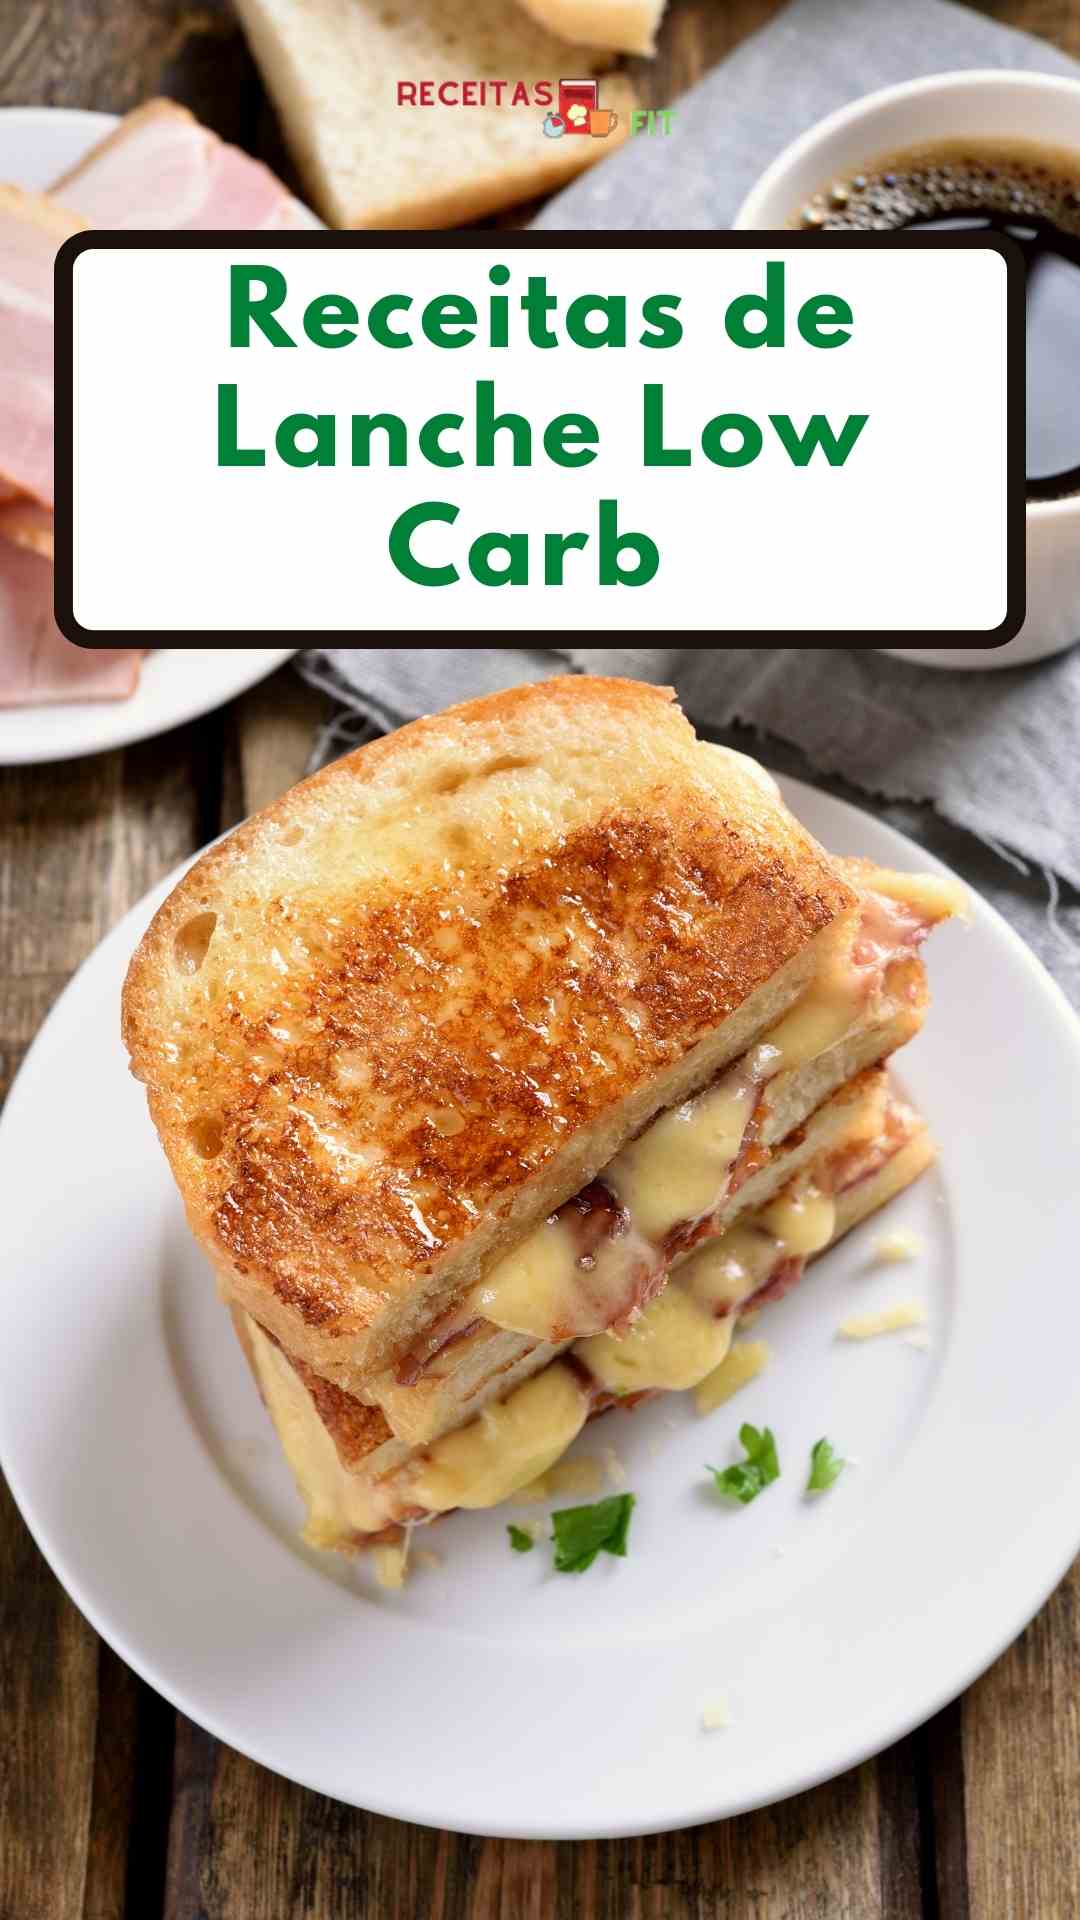 Lanche Low Carb - Receitas deliciosas para emagrecer comendo bem